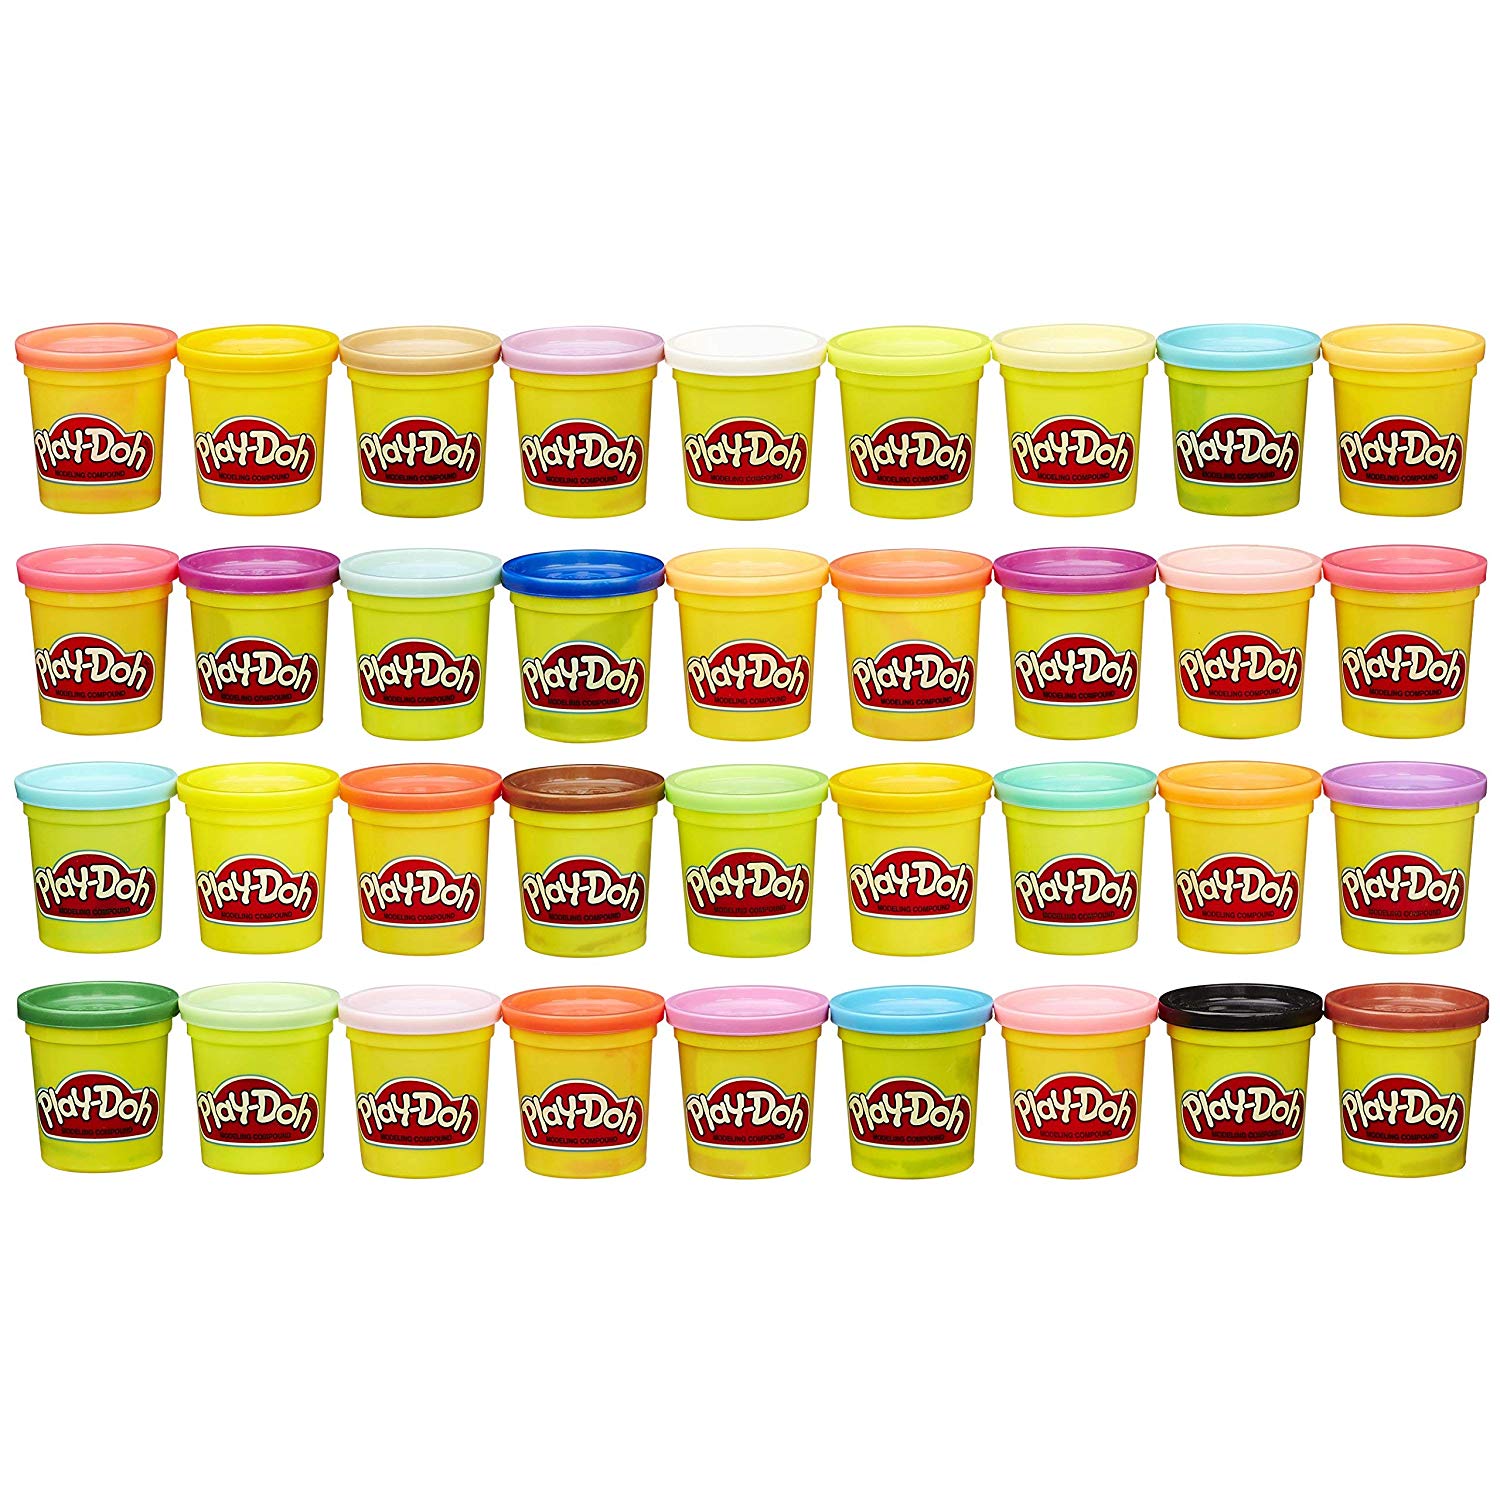 Play-Doh - 36 pots de Pate à Modeler - Couleurs Multiples - 85 g Chacun